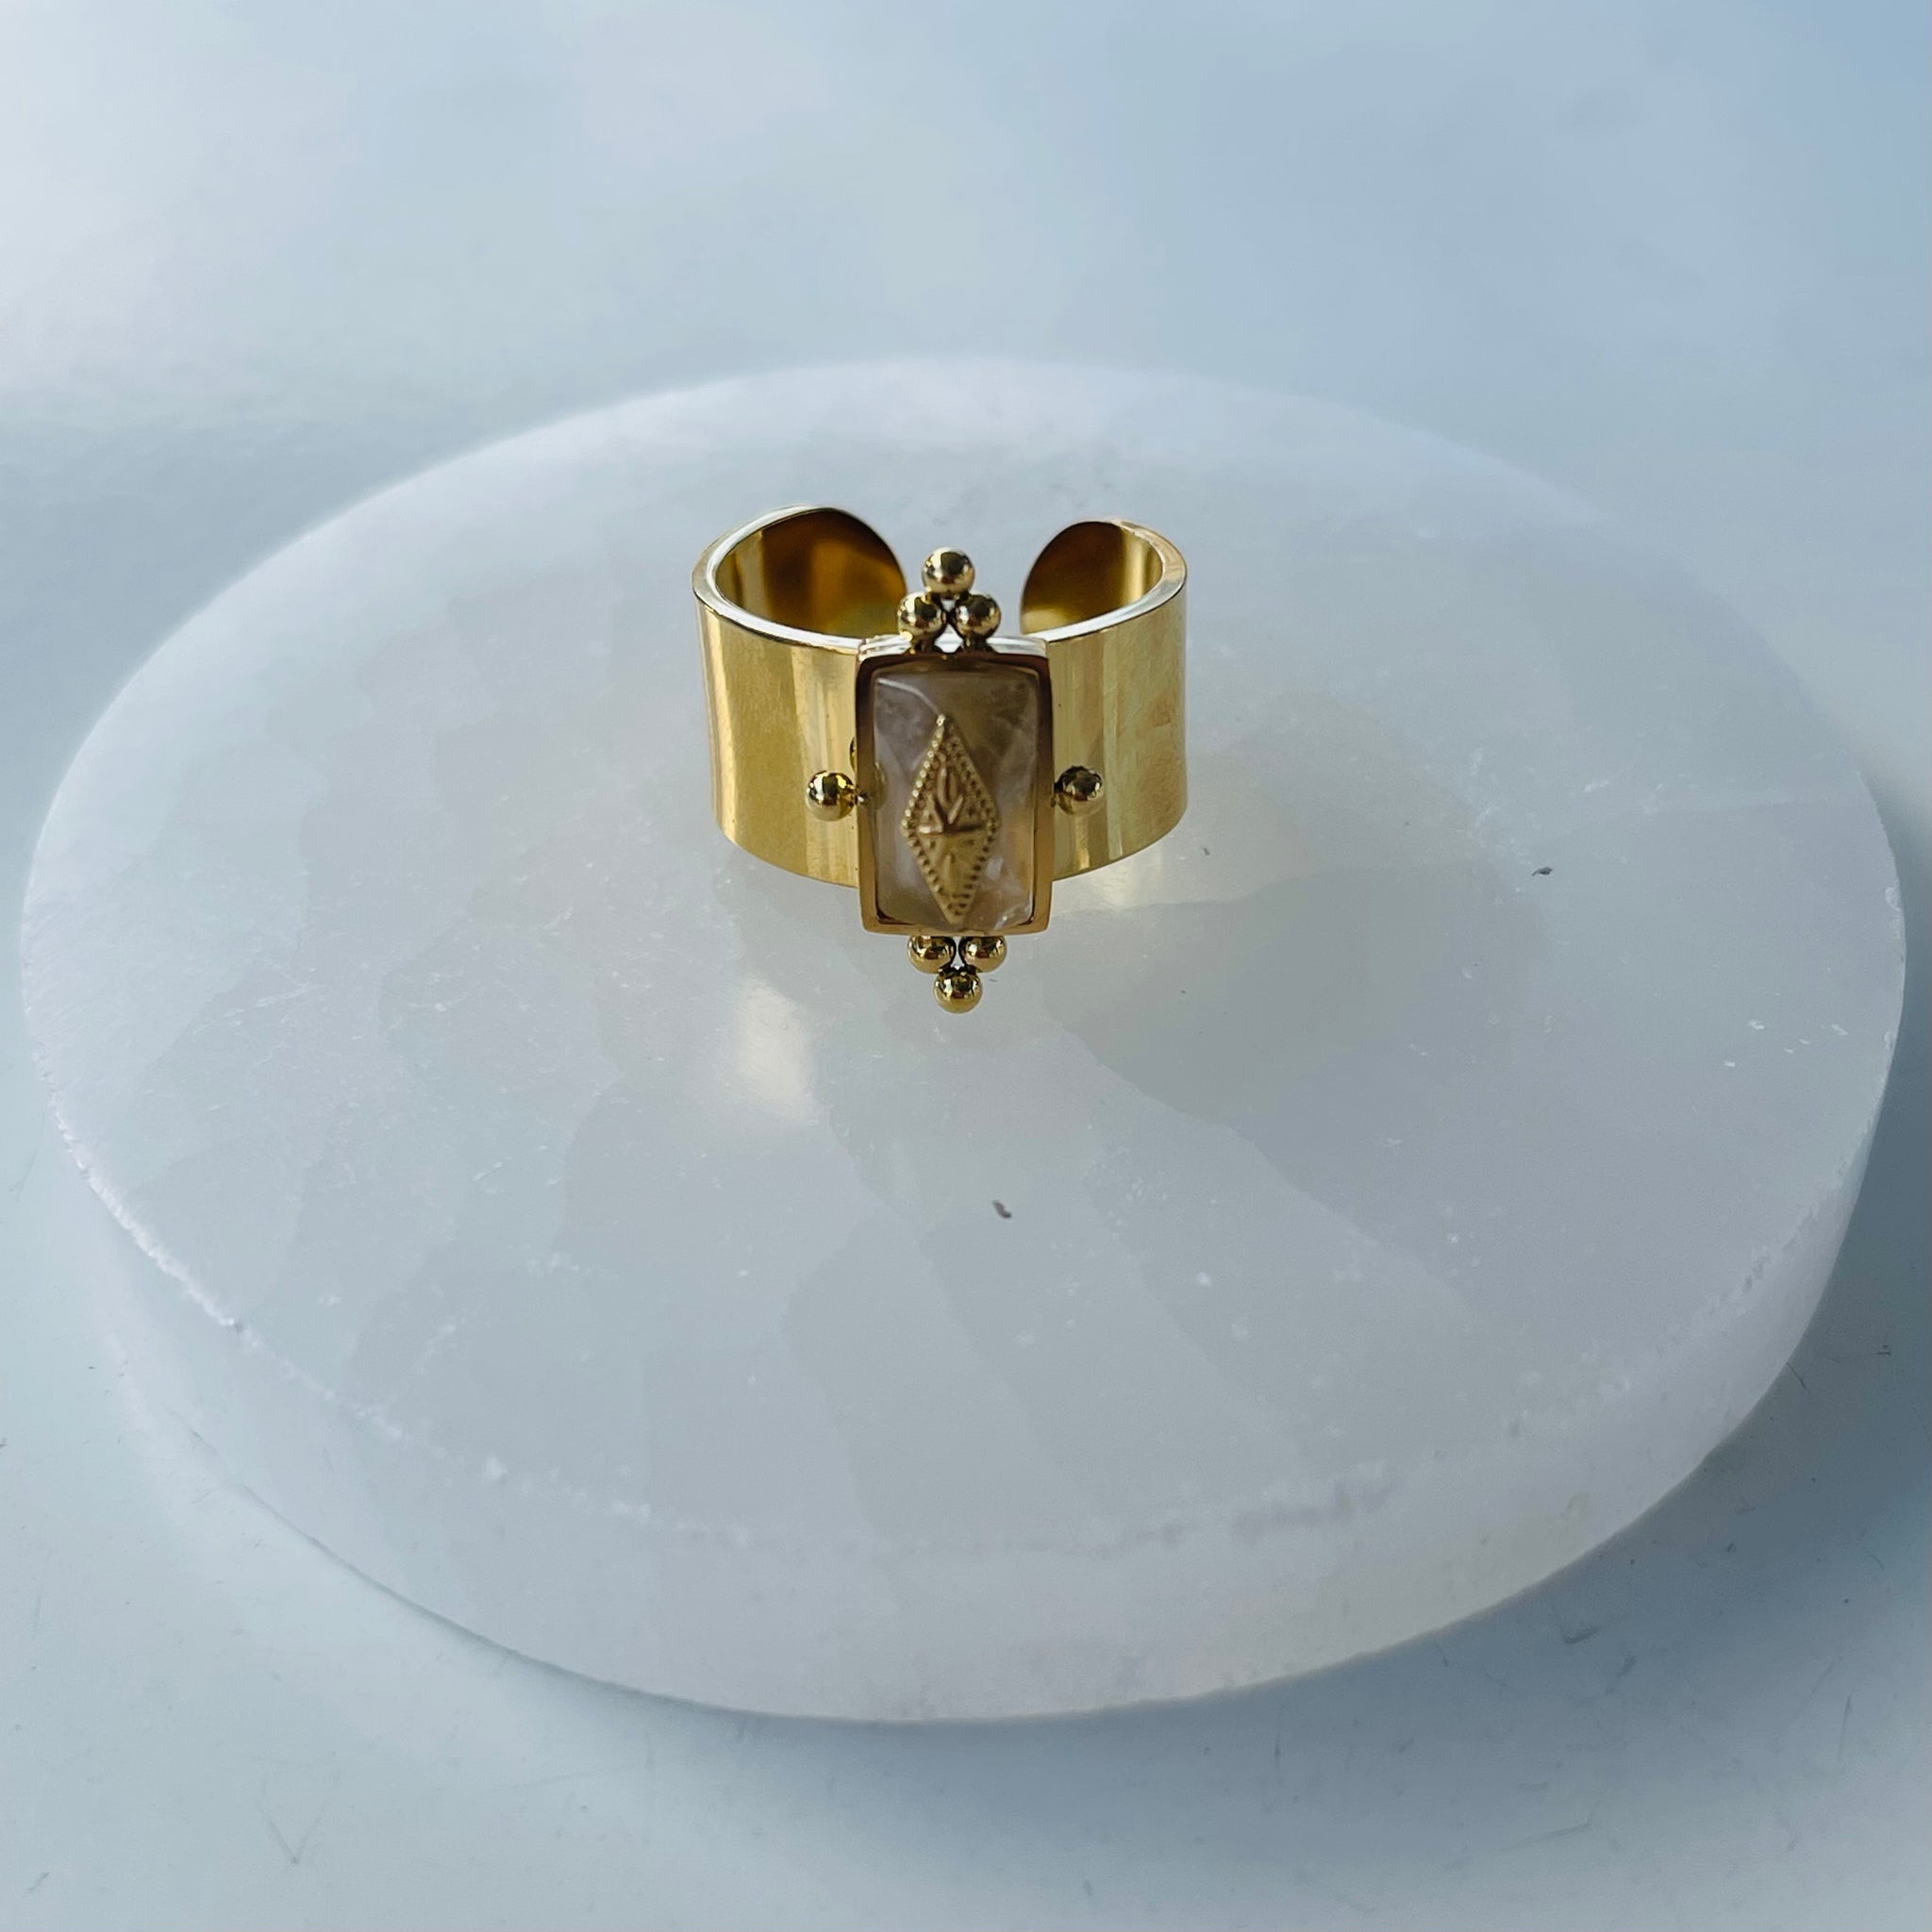 Vintage Gold Ring with Gems - Citrine - Adjustable